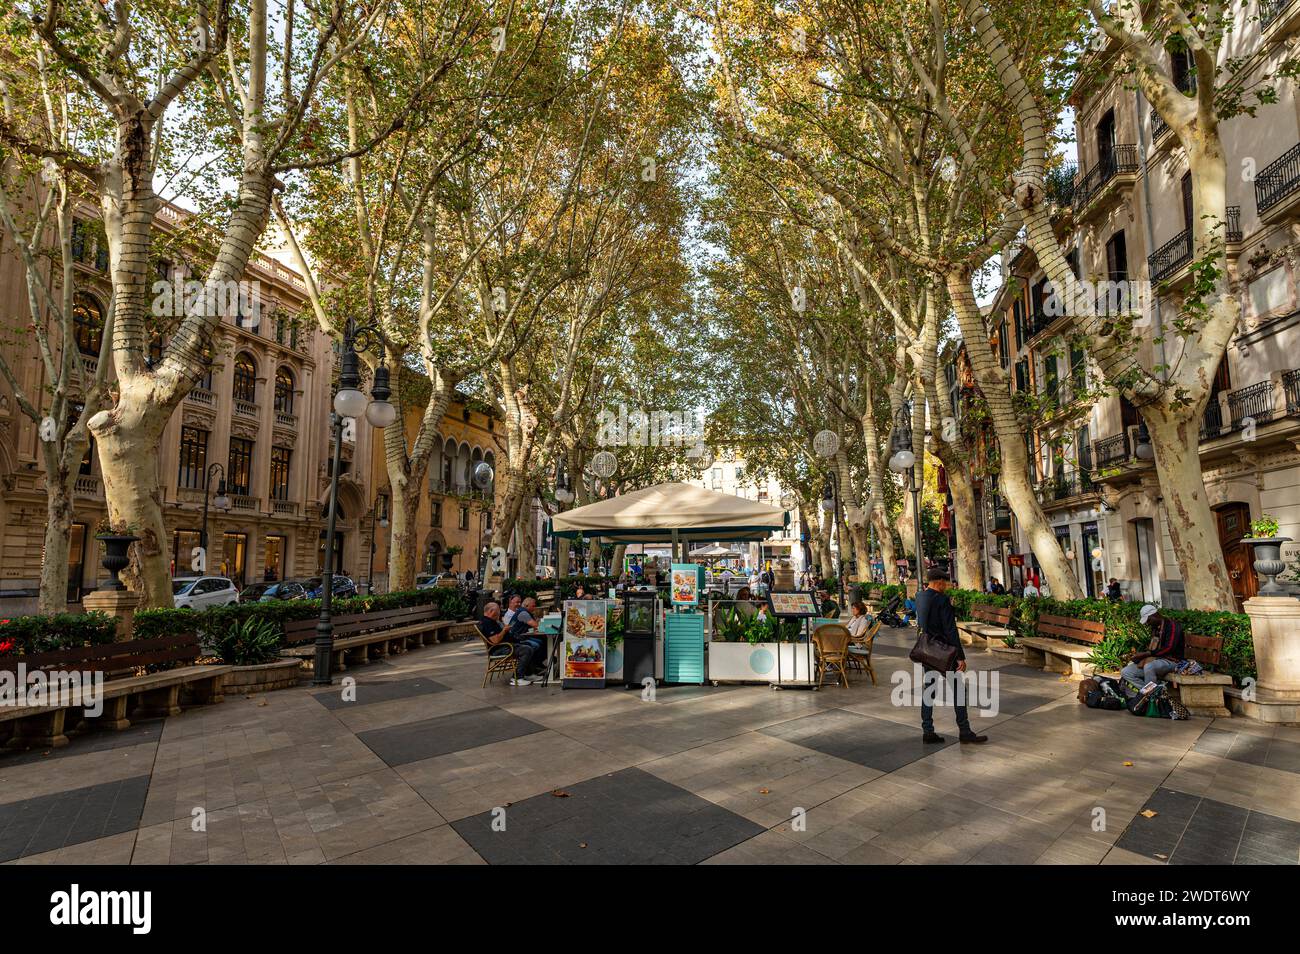 Avenue Born bordée d'arbres, Palma, Majorque, îles Baléares, Espagne, Méditerranée, Europe Banque D'Images